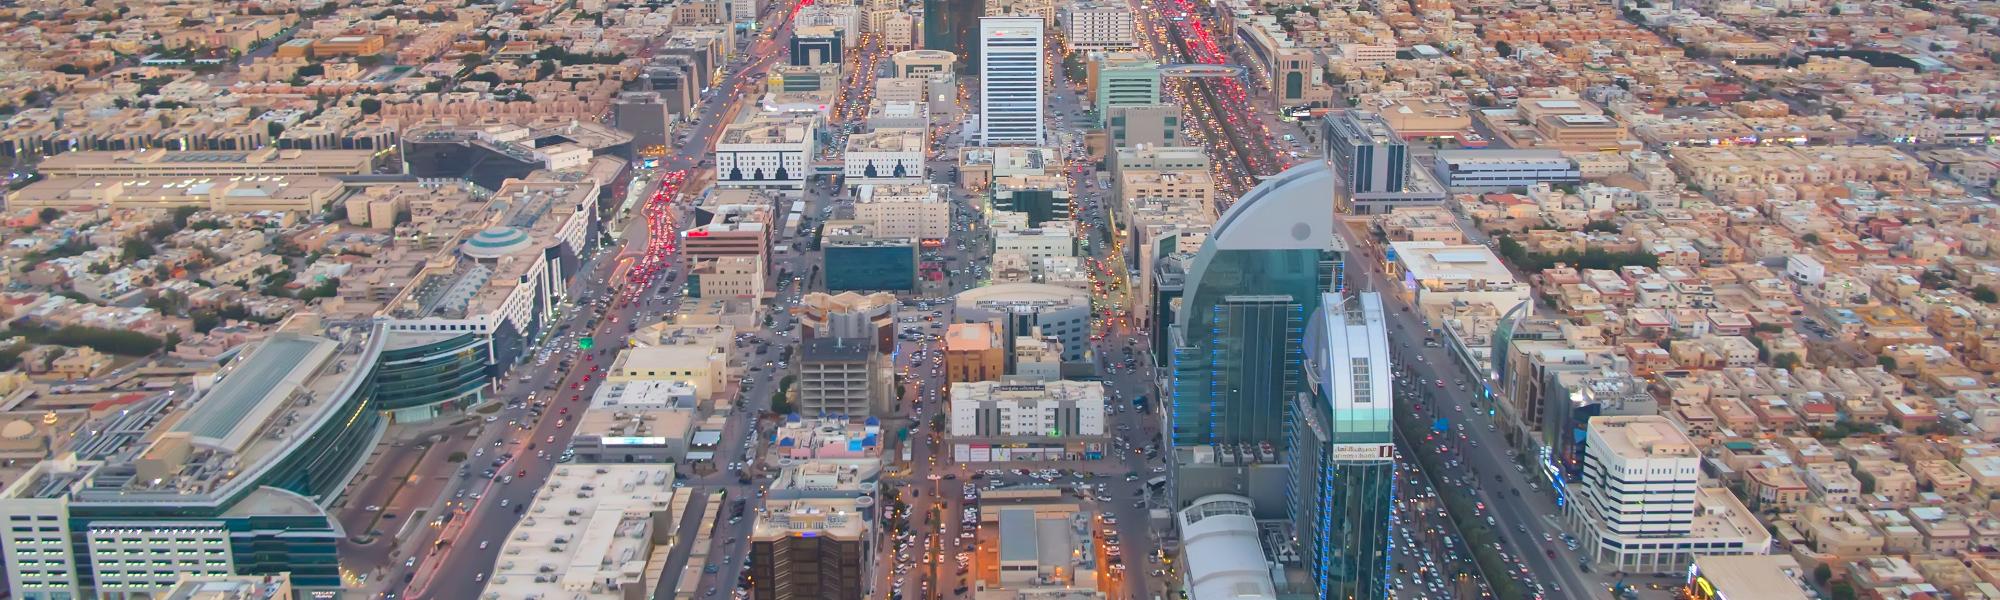 aerial view of downtown Riyadh